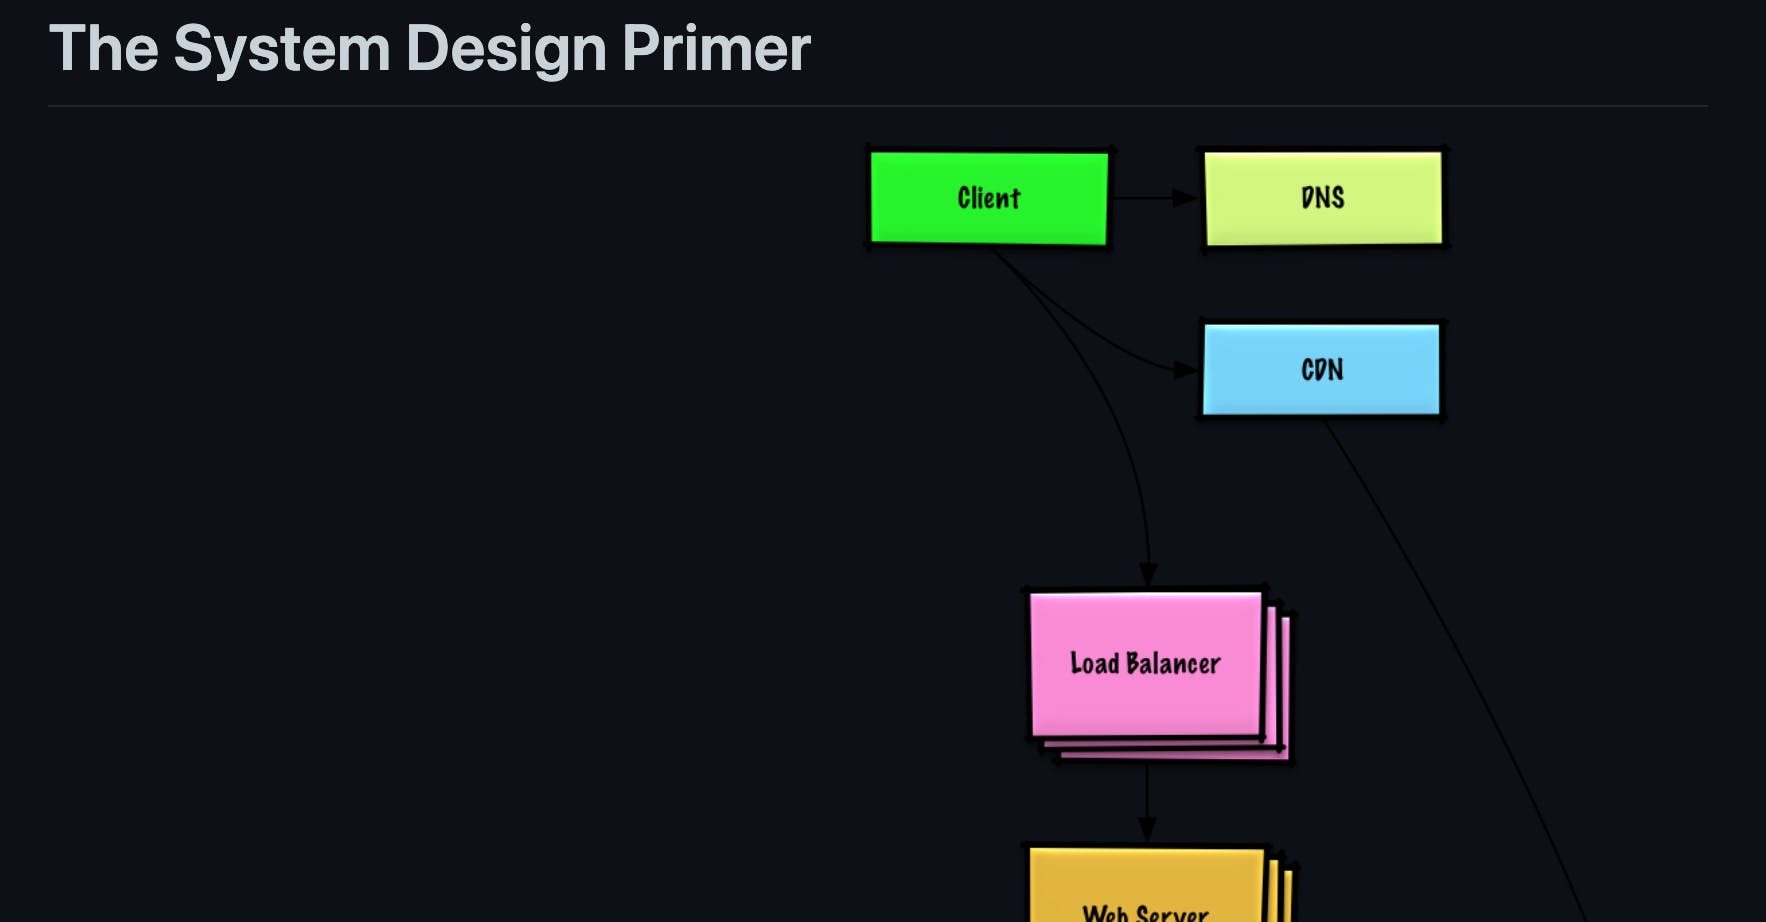 The System Design Primer